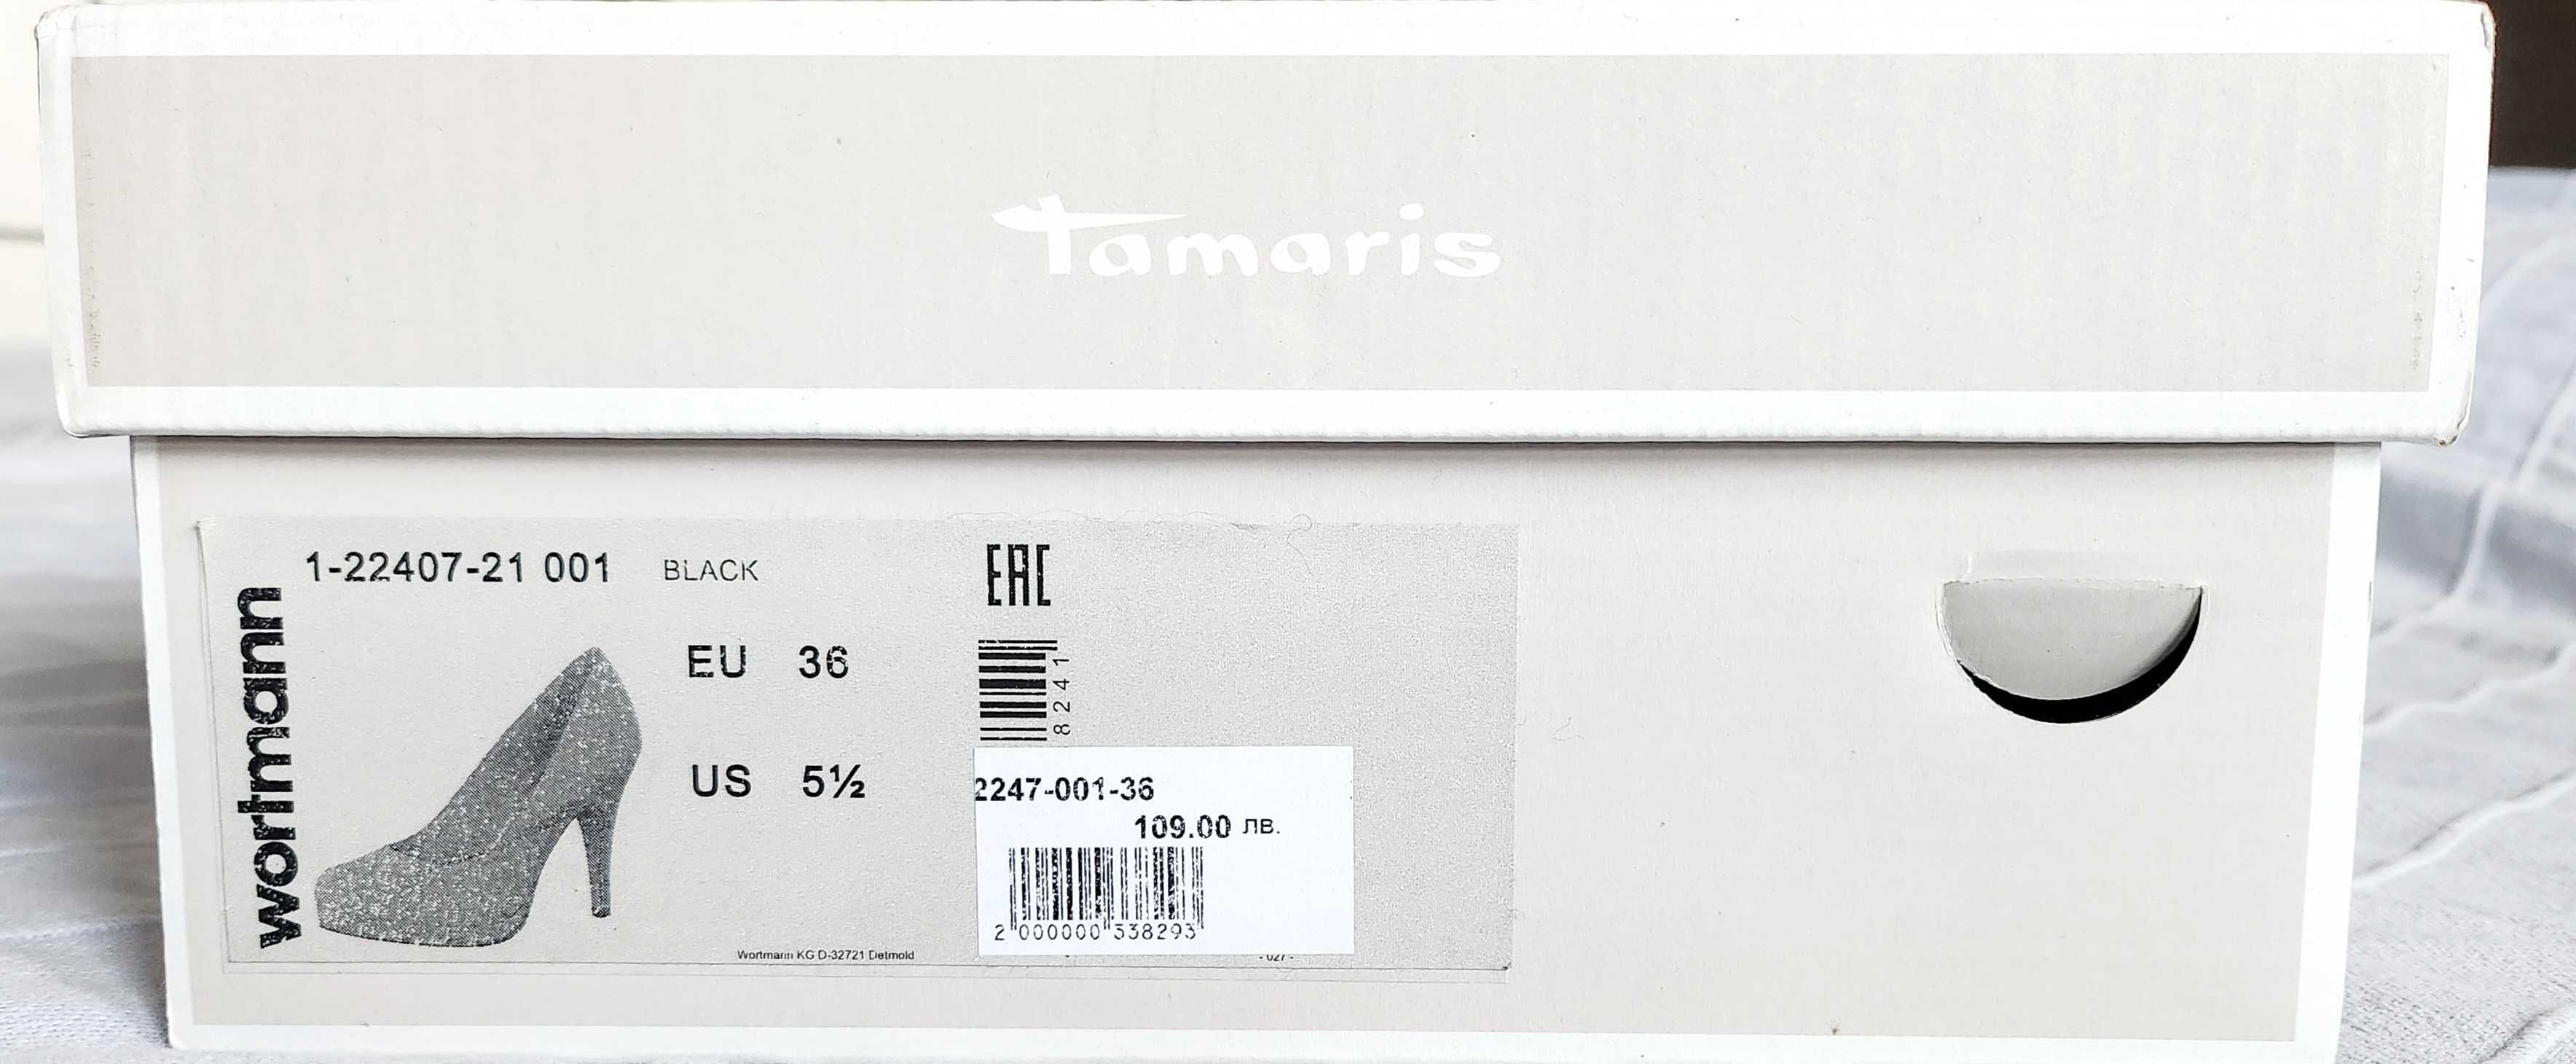 Официални обувки черен набук Тамарис (Tamaris),36 номер, 8 см ток,нови